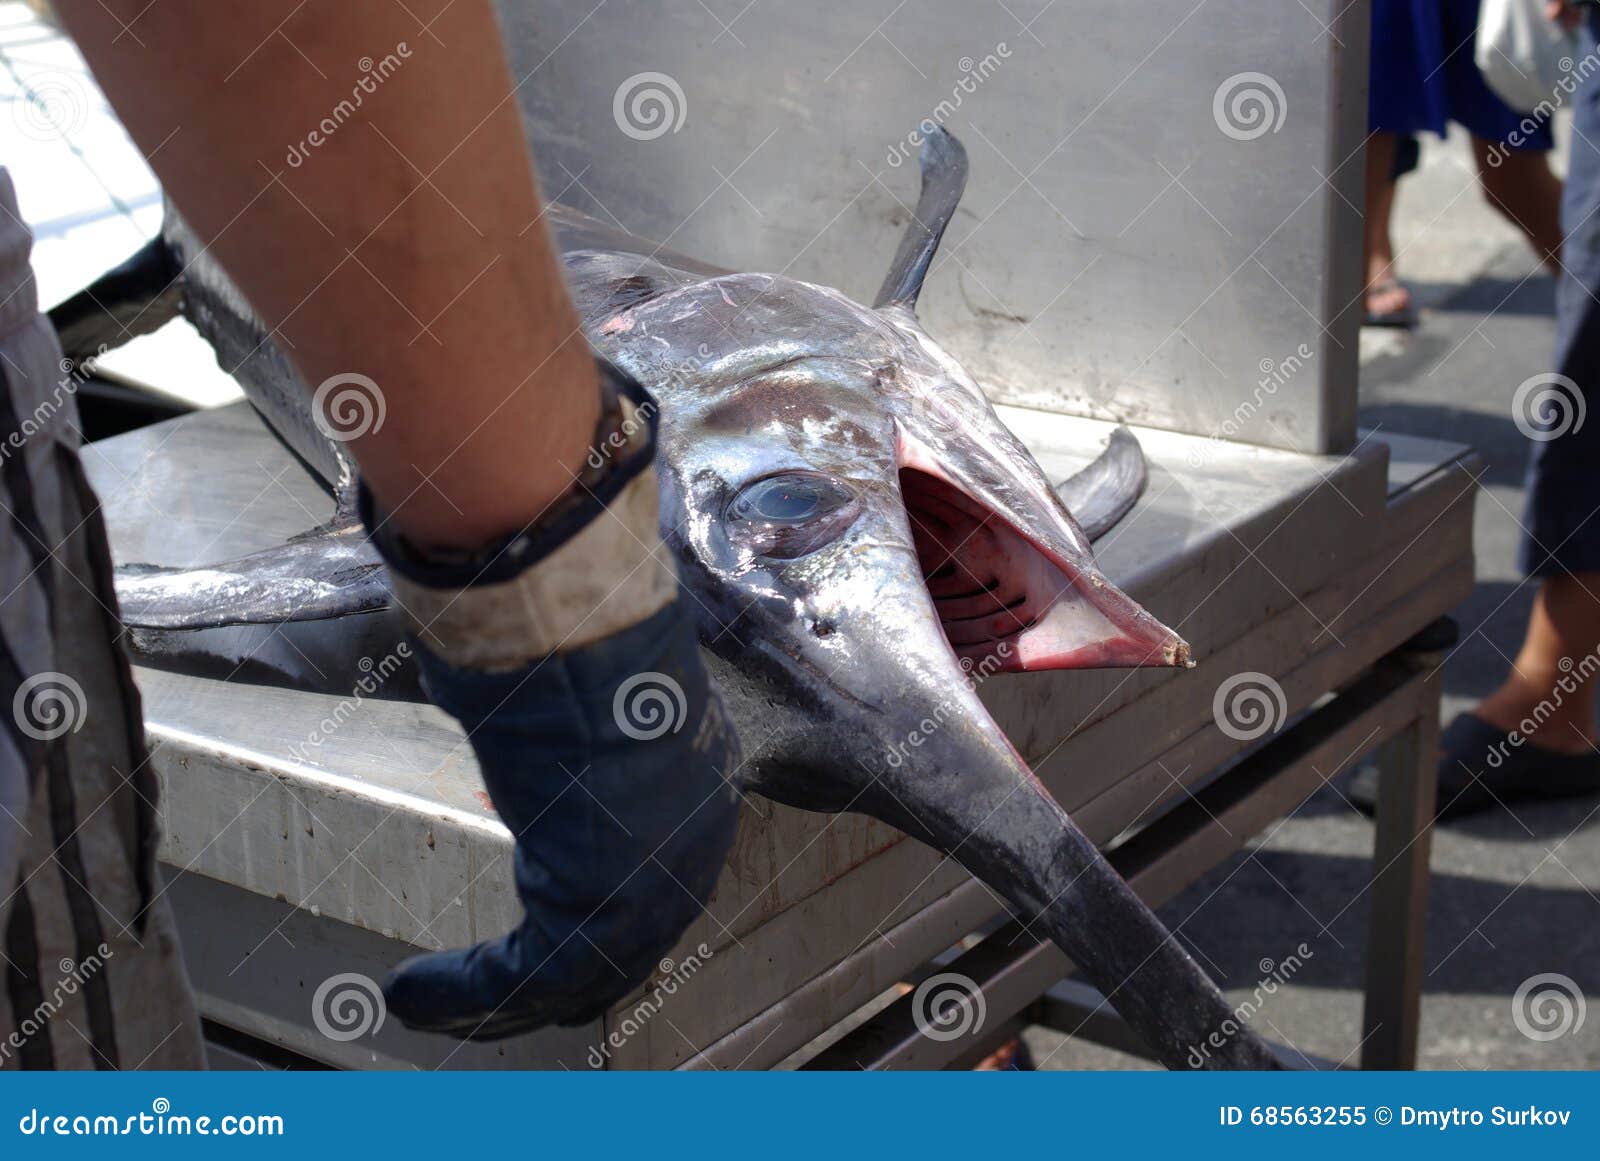 Потрошенная без головы. Рыба меч проткнула рыбу. Рыба меч протыкает рыбака. Рыба меч проткнула человека.